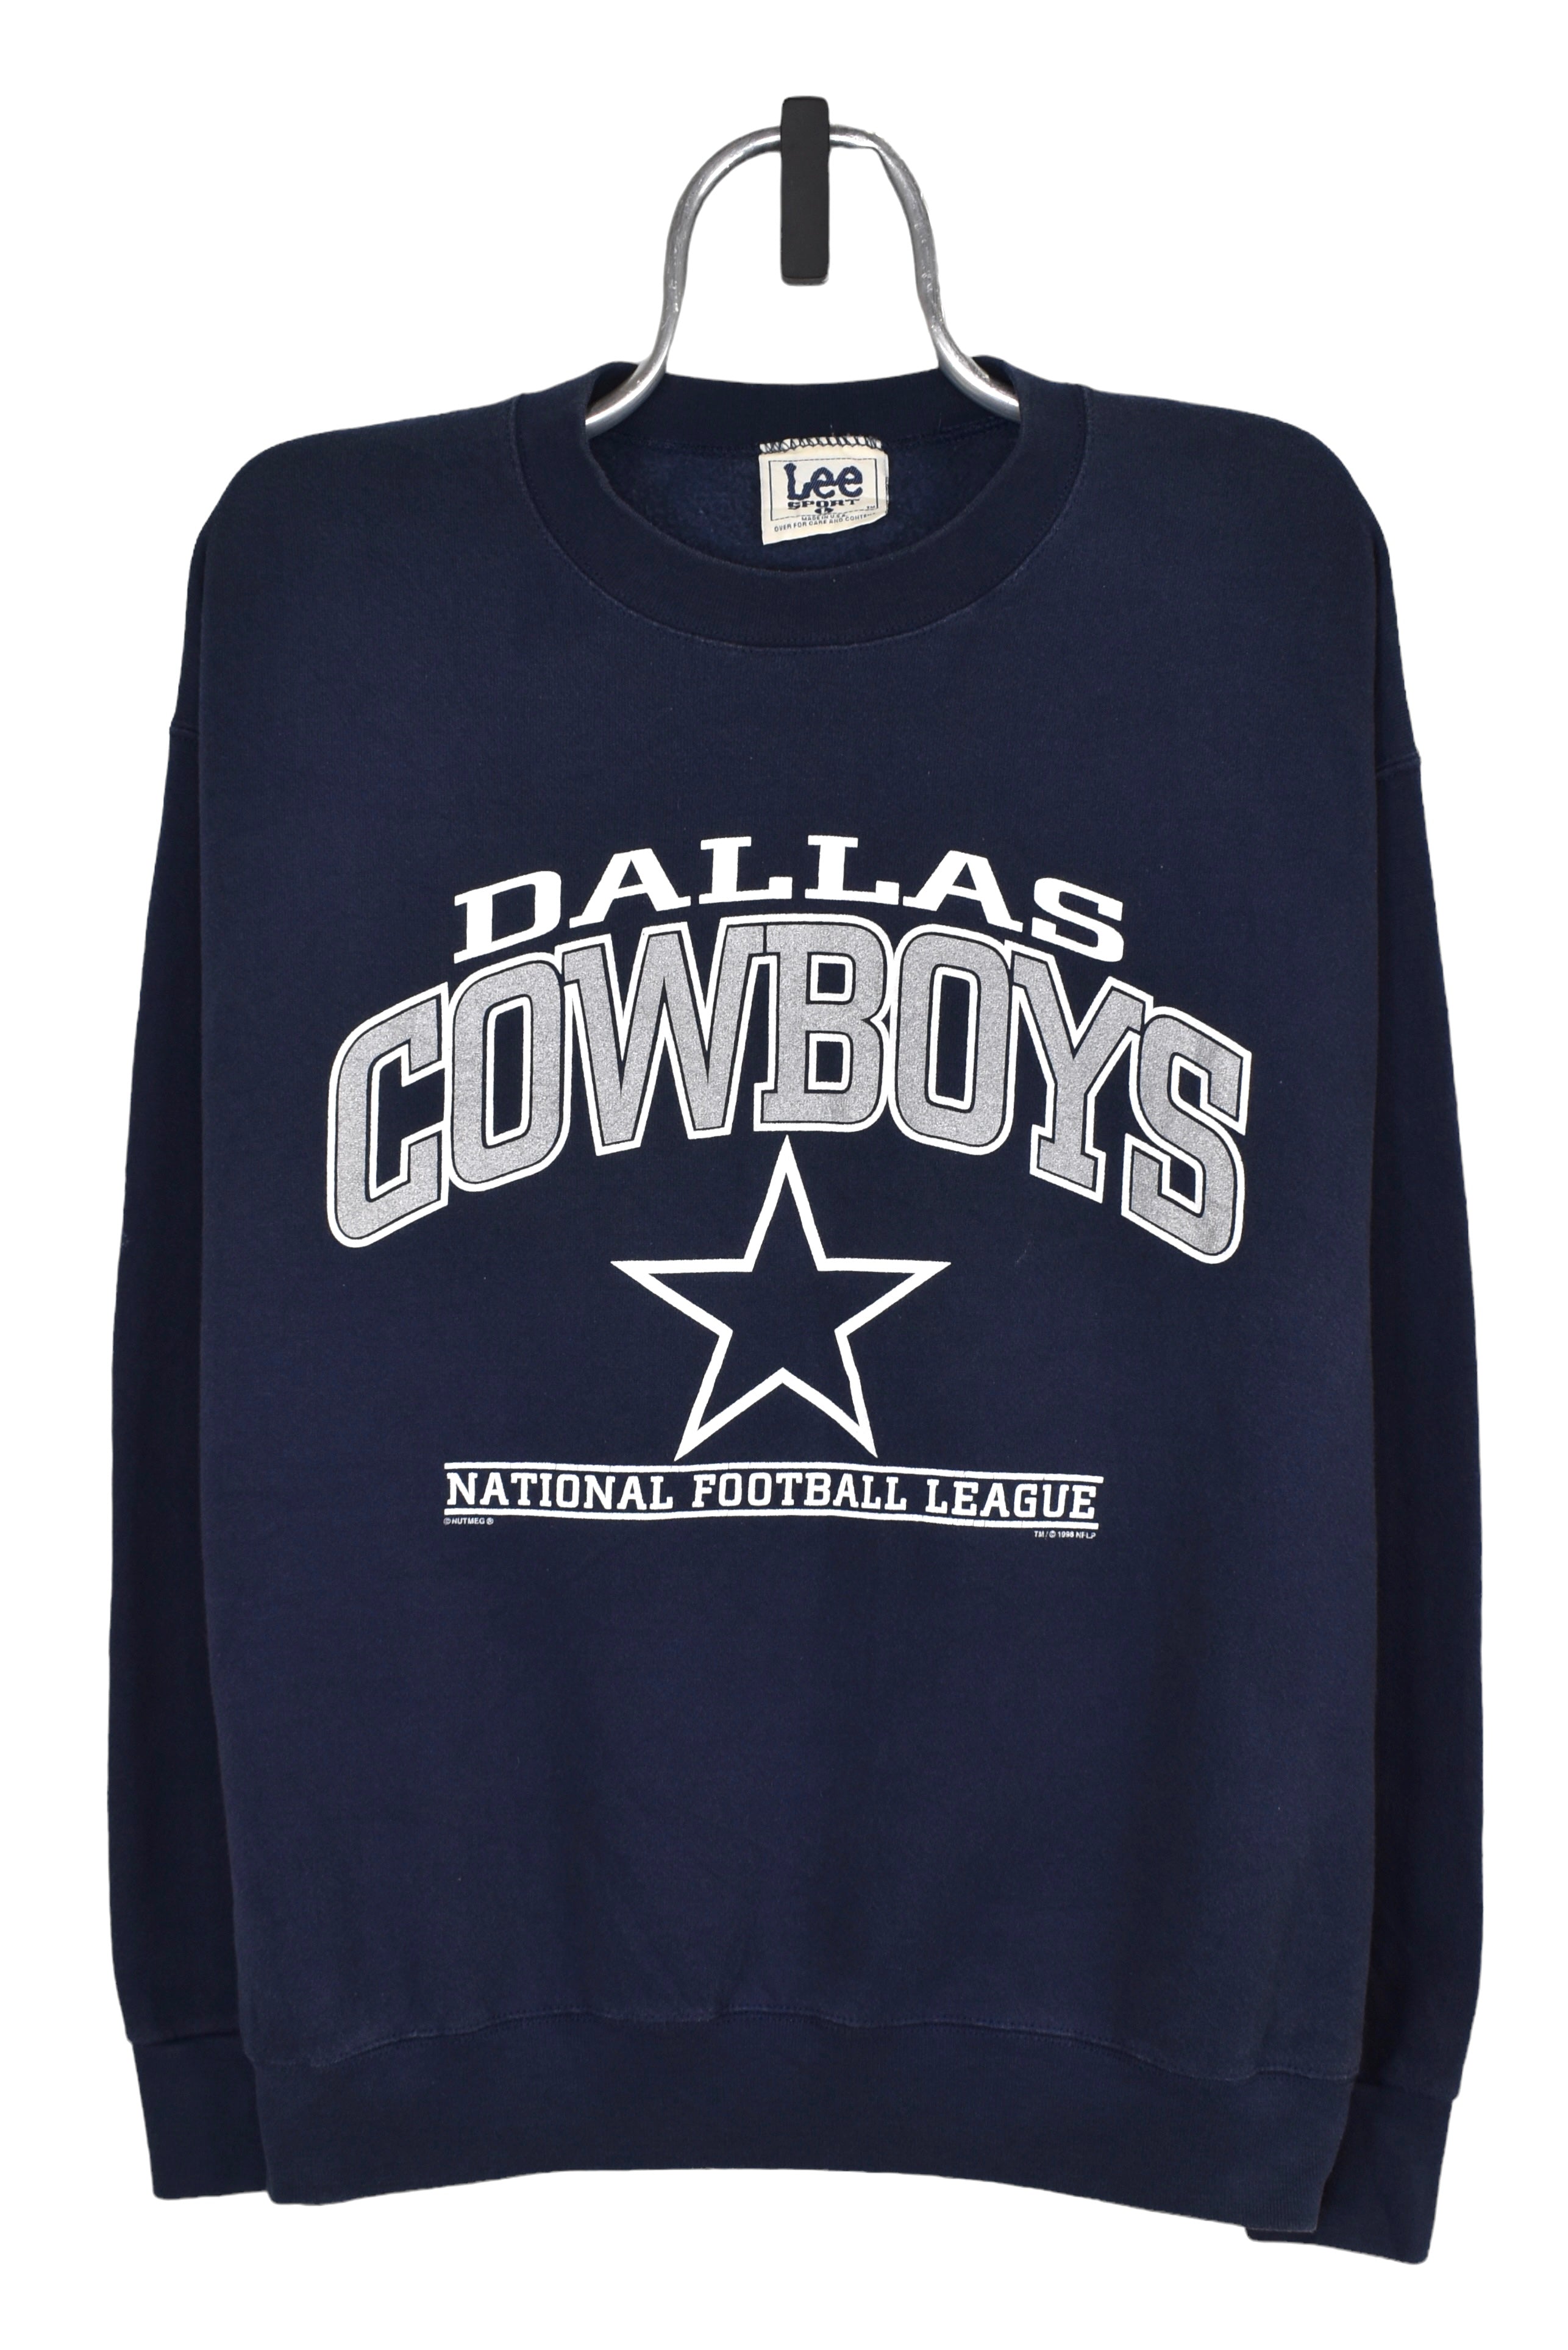 Vintage Dallas Cowboys sweatshirt (L), navy NFL graphic crewneck